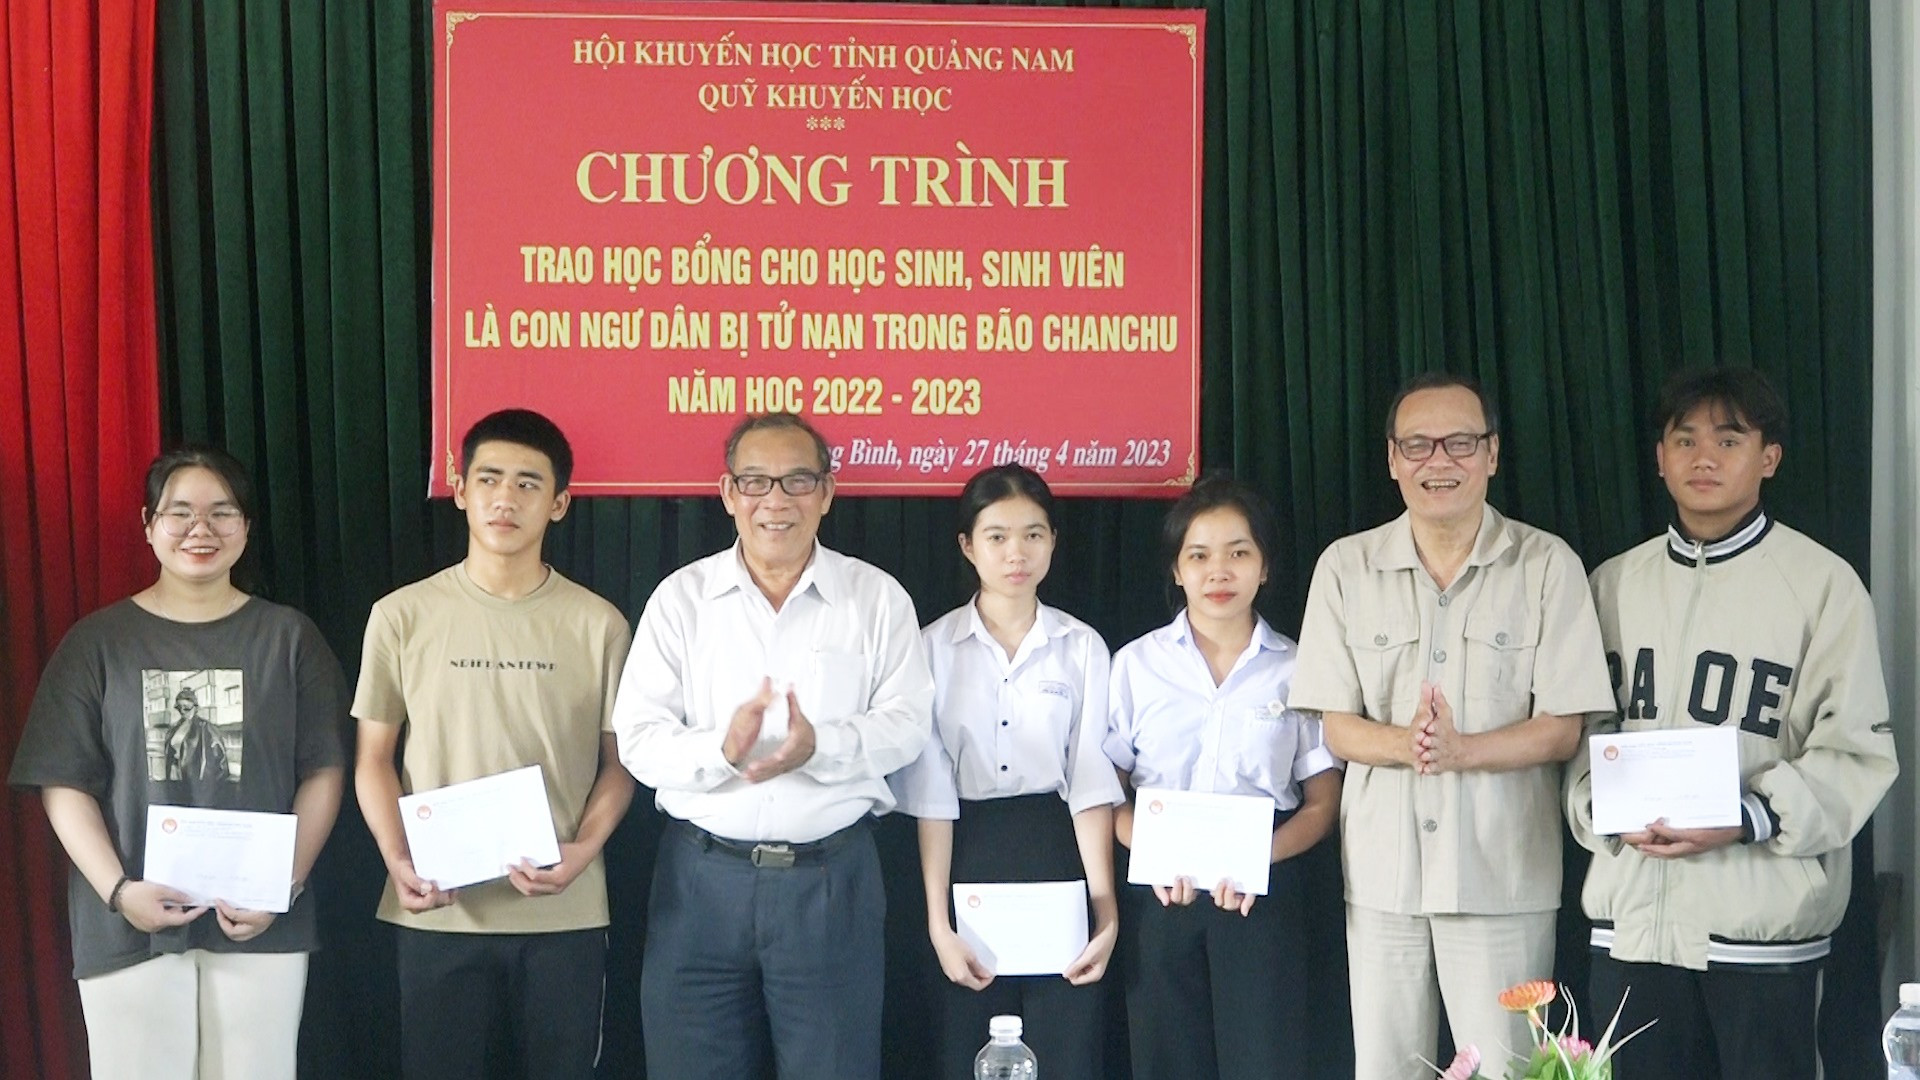 Trao học bổng cho con ngư dân bị nạn trong bão ChanChu tại huyện Thăng Bình.